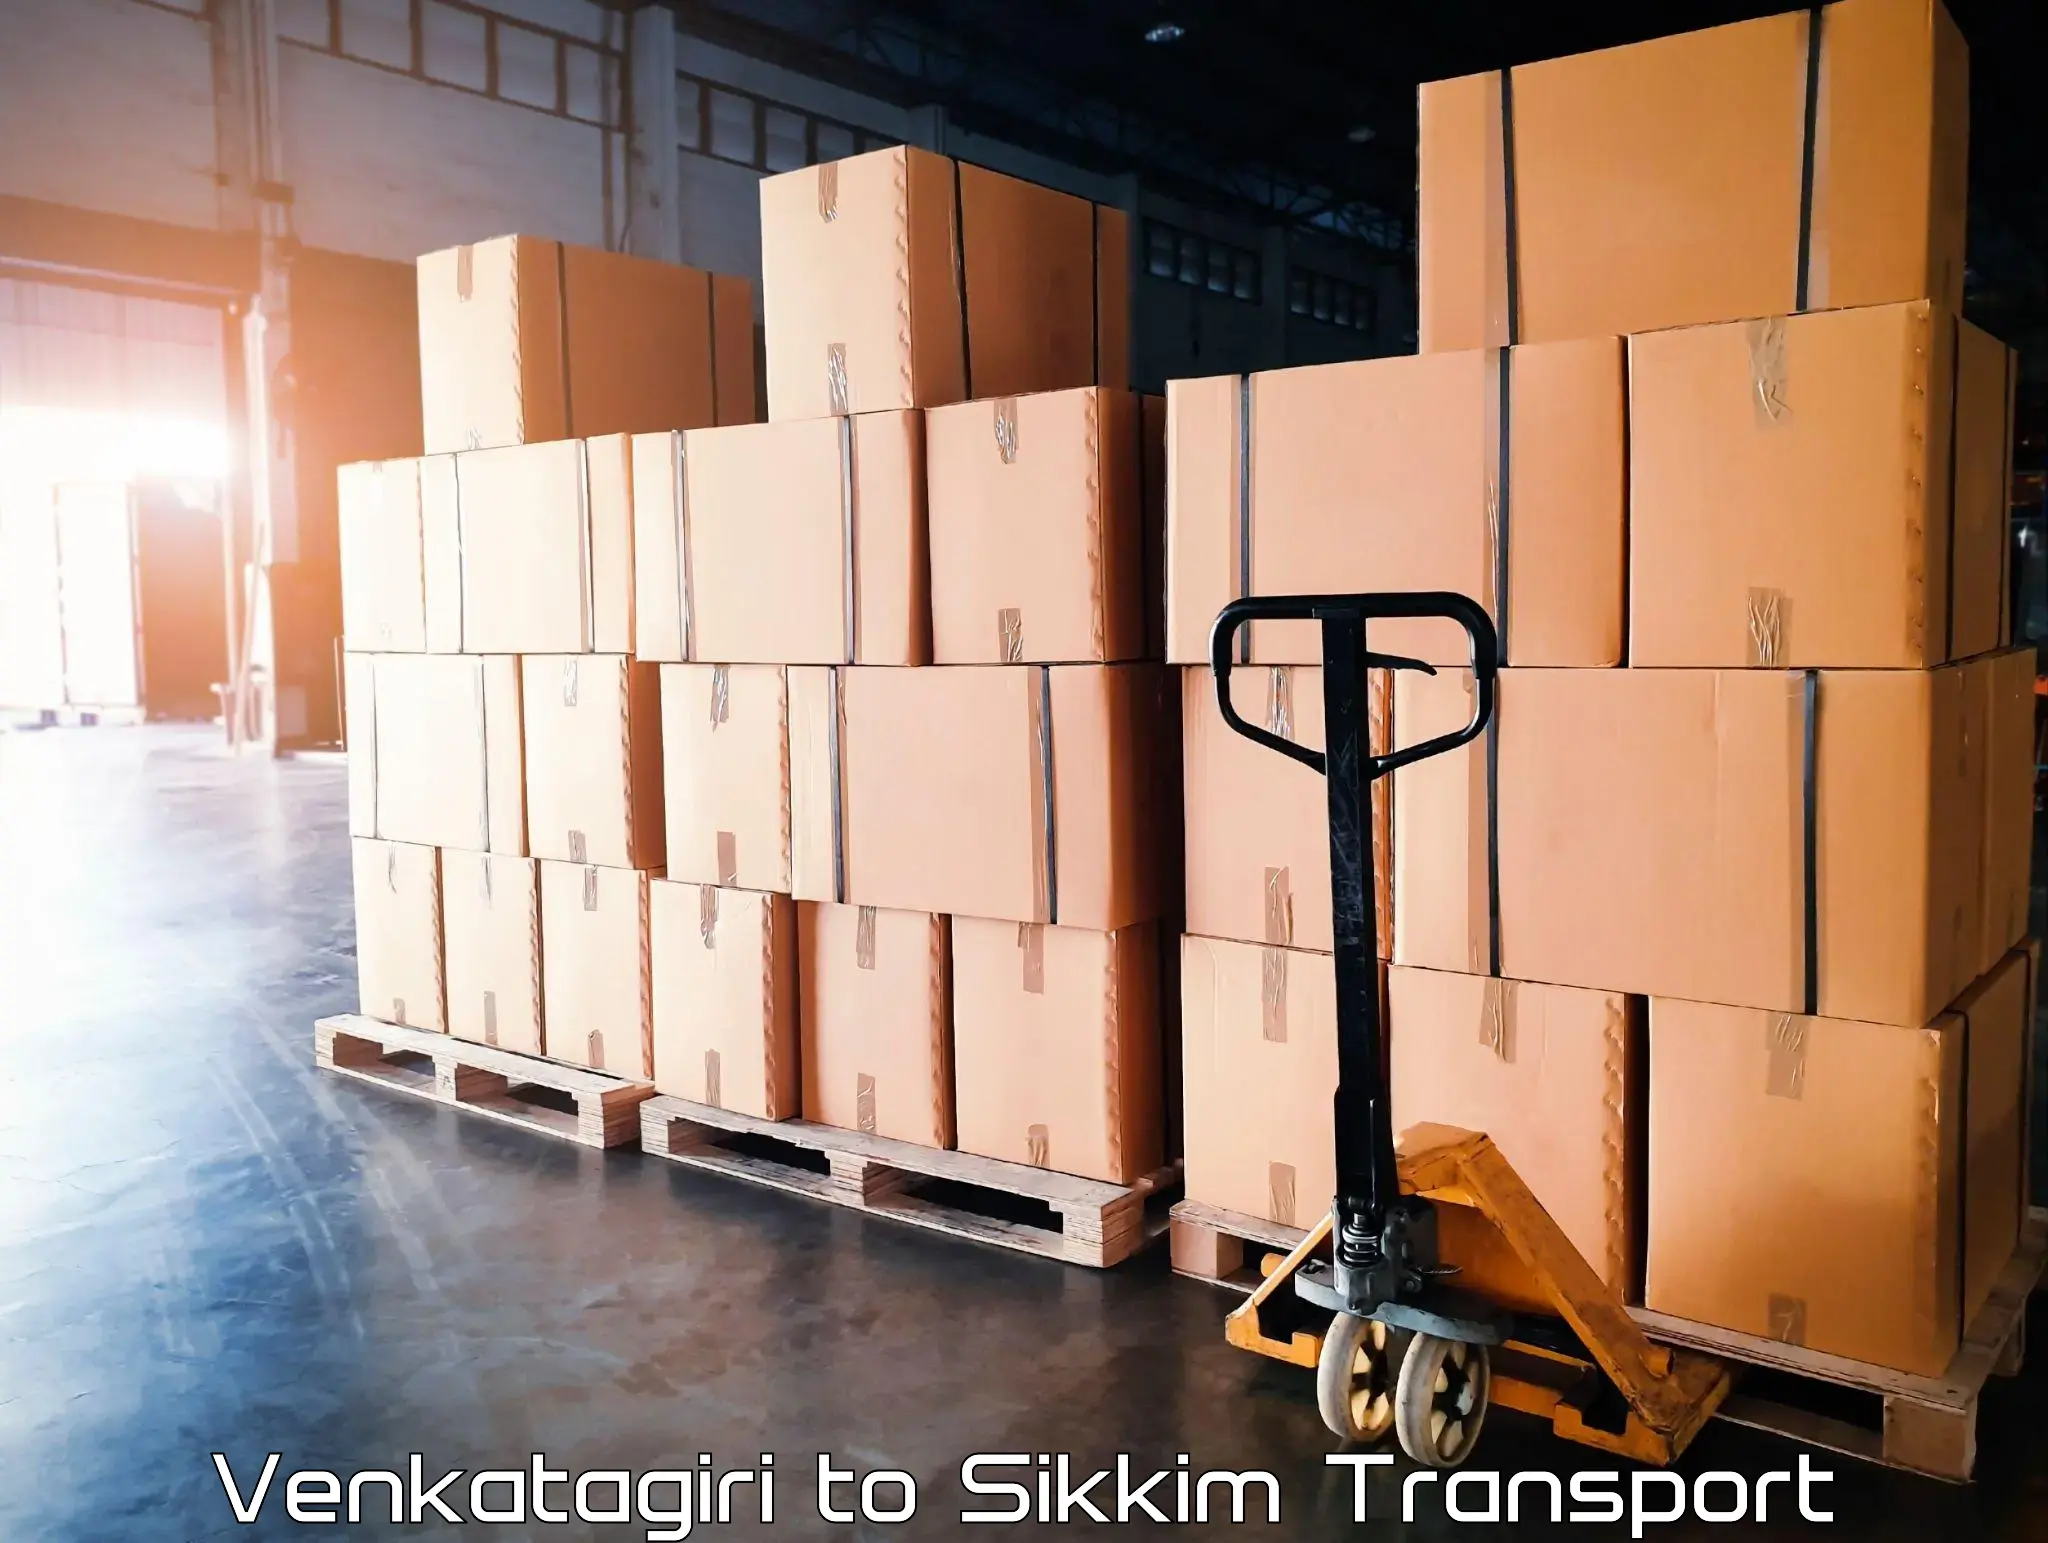 Daily parcel service transport in Venkatagiri to Gangtok